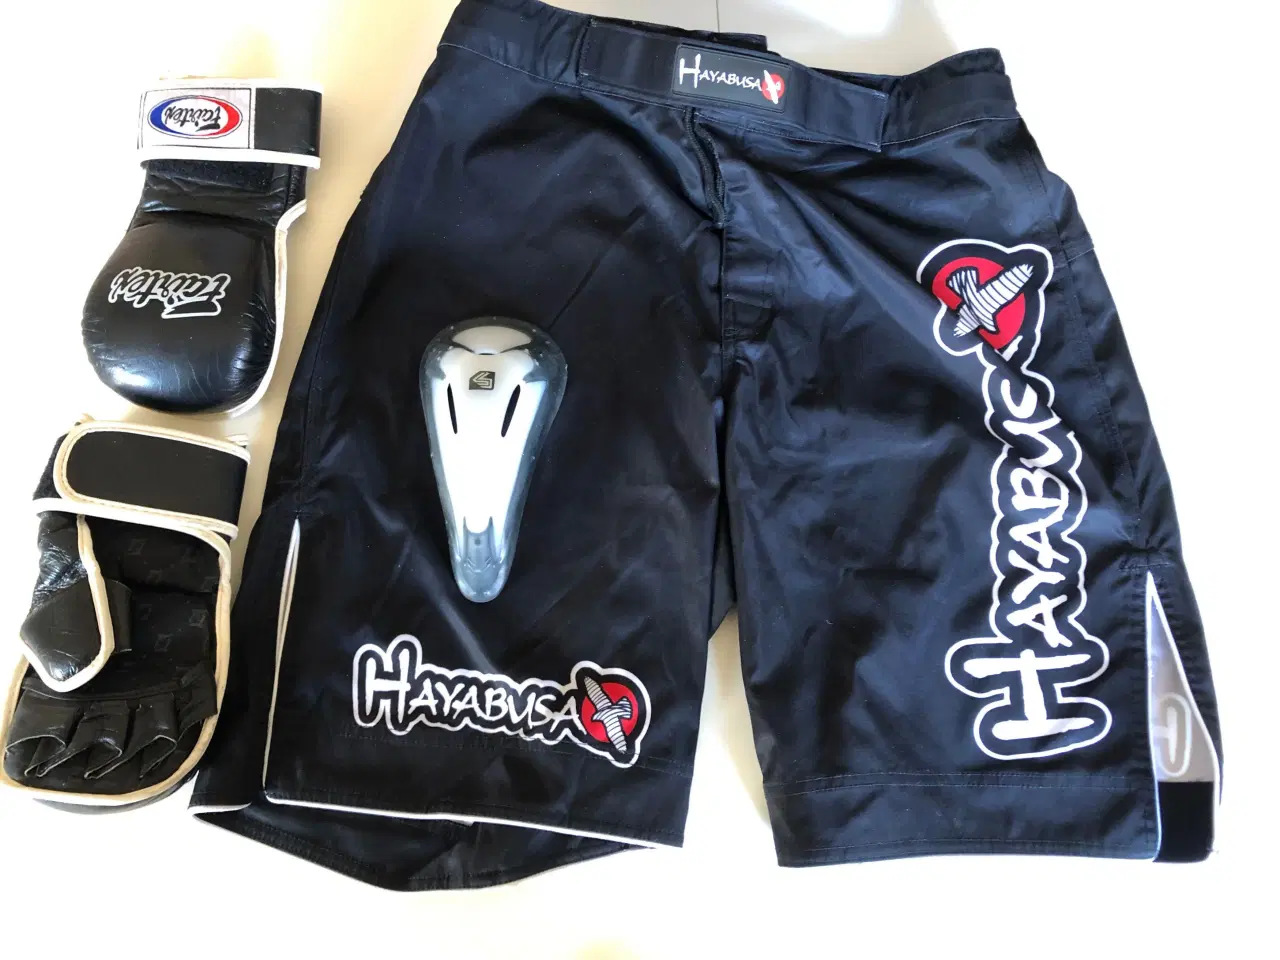 Billede 1 - Hayabusa shorts m. Handsker og skridtbeskytter